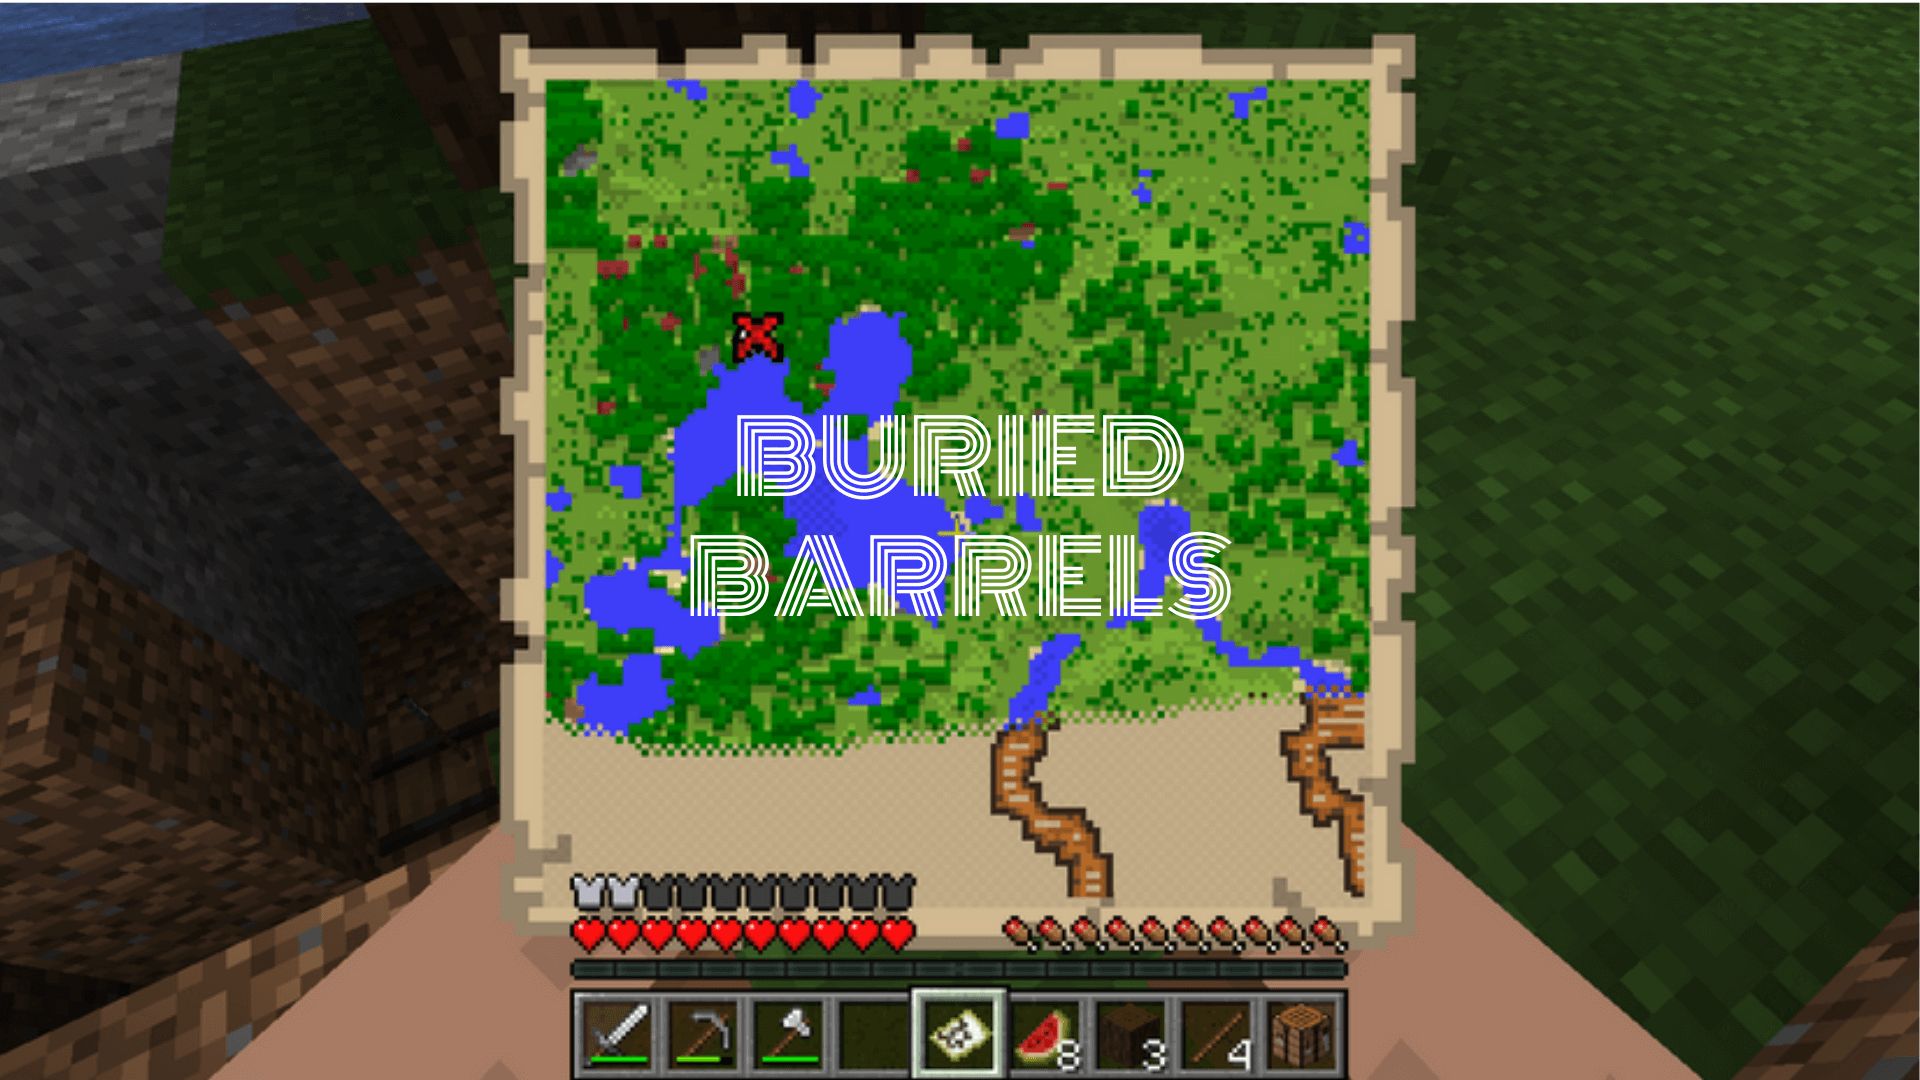 Buried Barrels